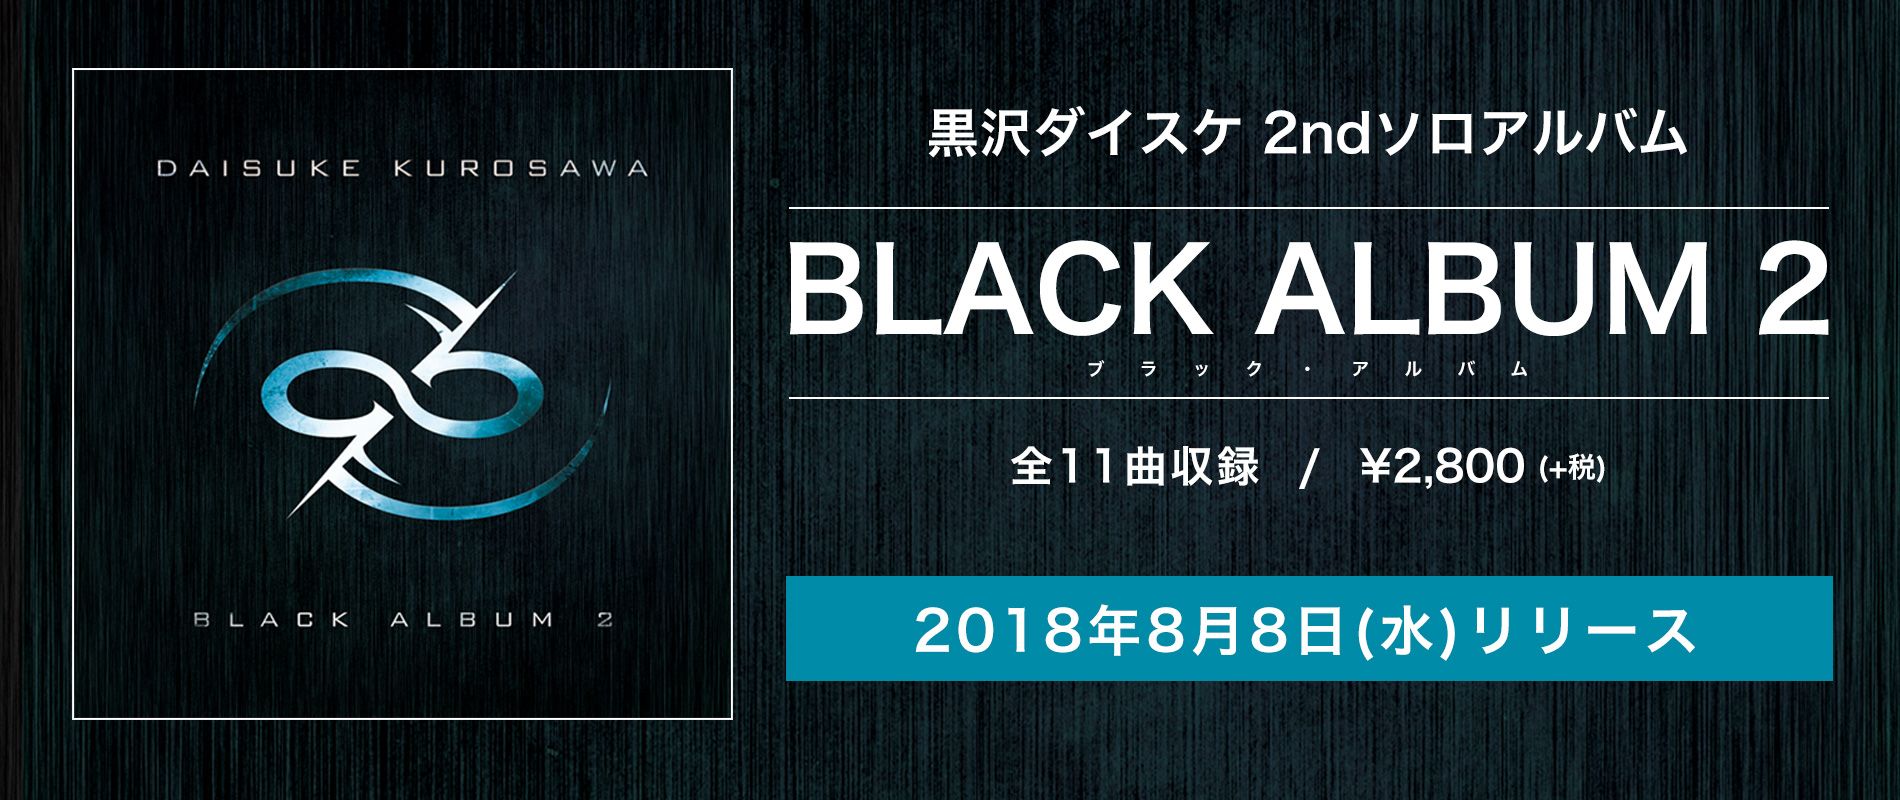 BLACK ALBUM 2 バナー